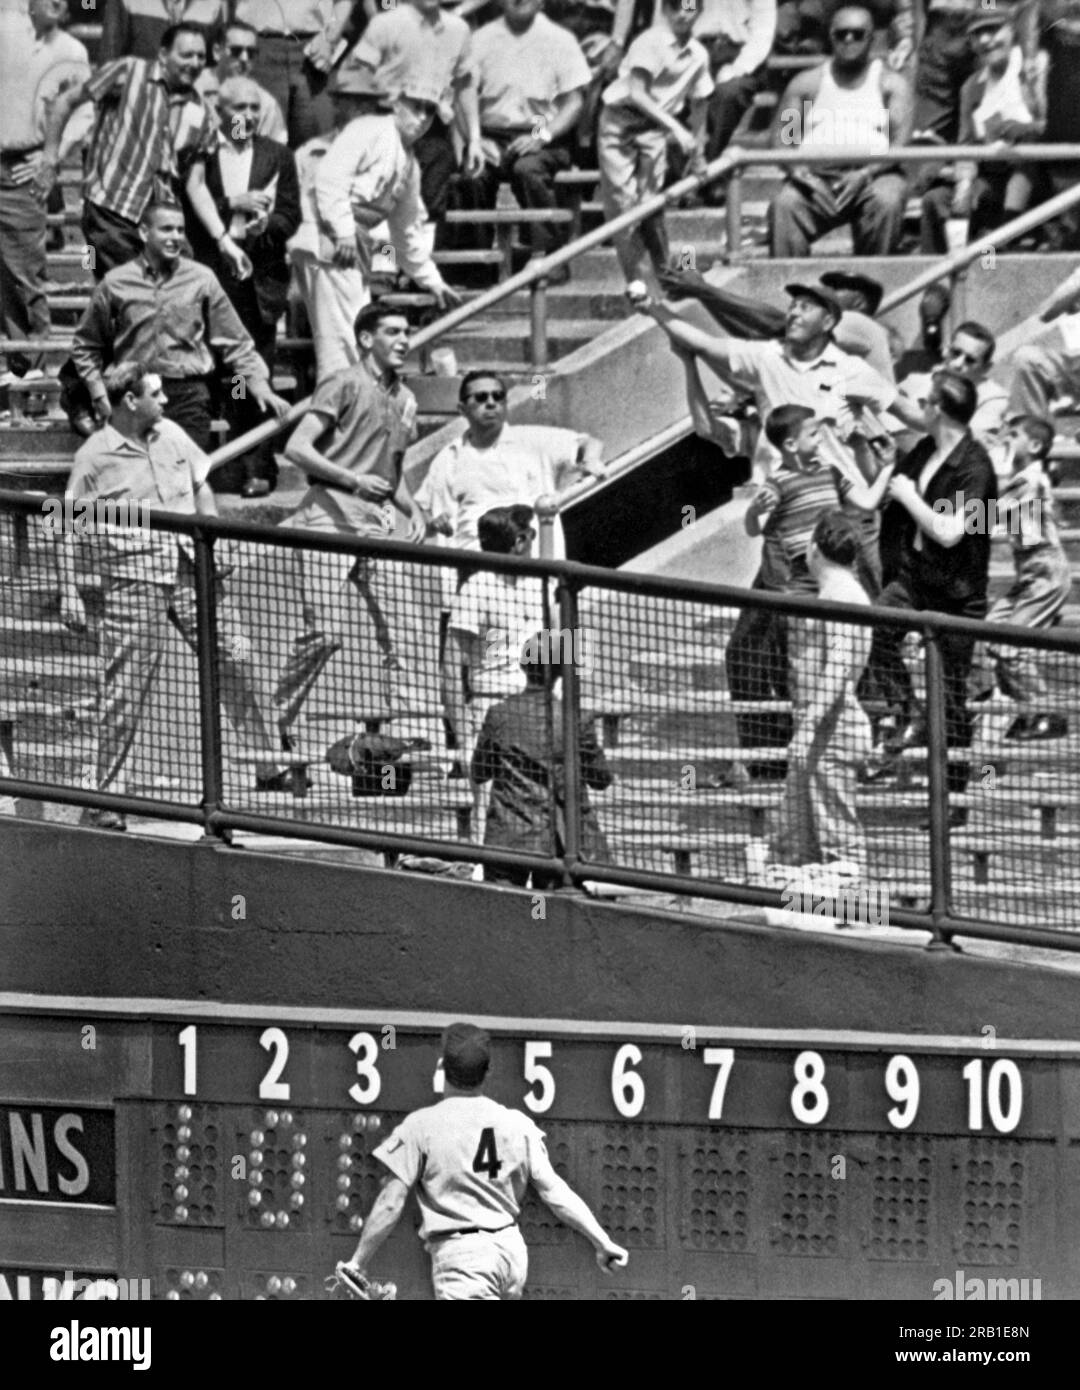 New York, New York : 7 juin 1961. Bob Allison des Twins du Minnesota regarde un fan des Yankees de New York au Yankee Stadium faire une prise d'une main du 9e circuit de l'année de Yogi Berra. C'était le 31e homer des Yankees en 16 matchs, un nouveau record. Banque D'Images